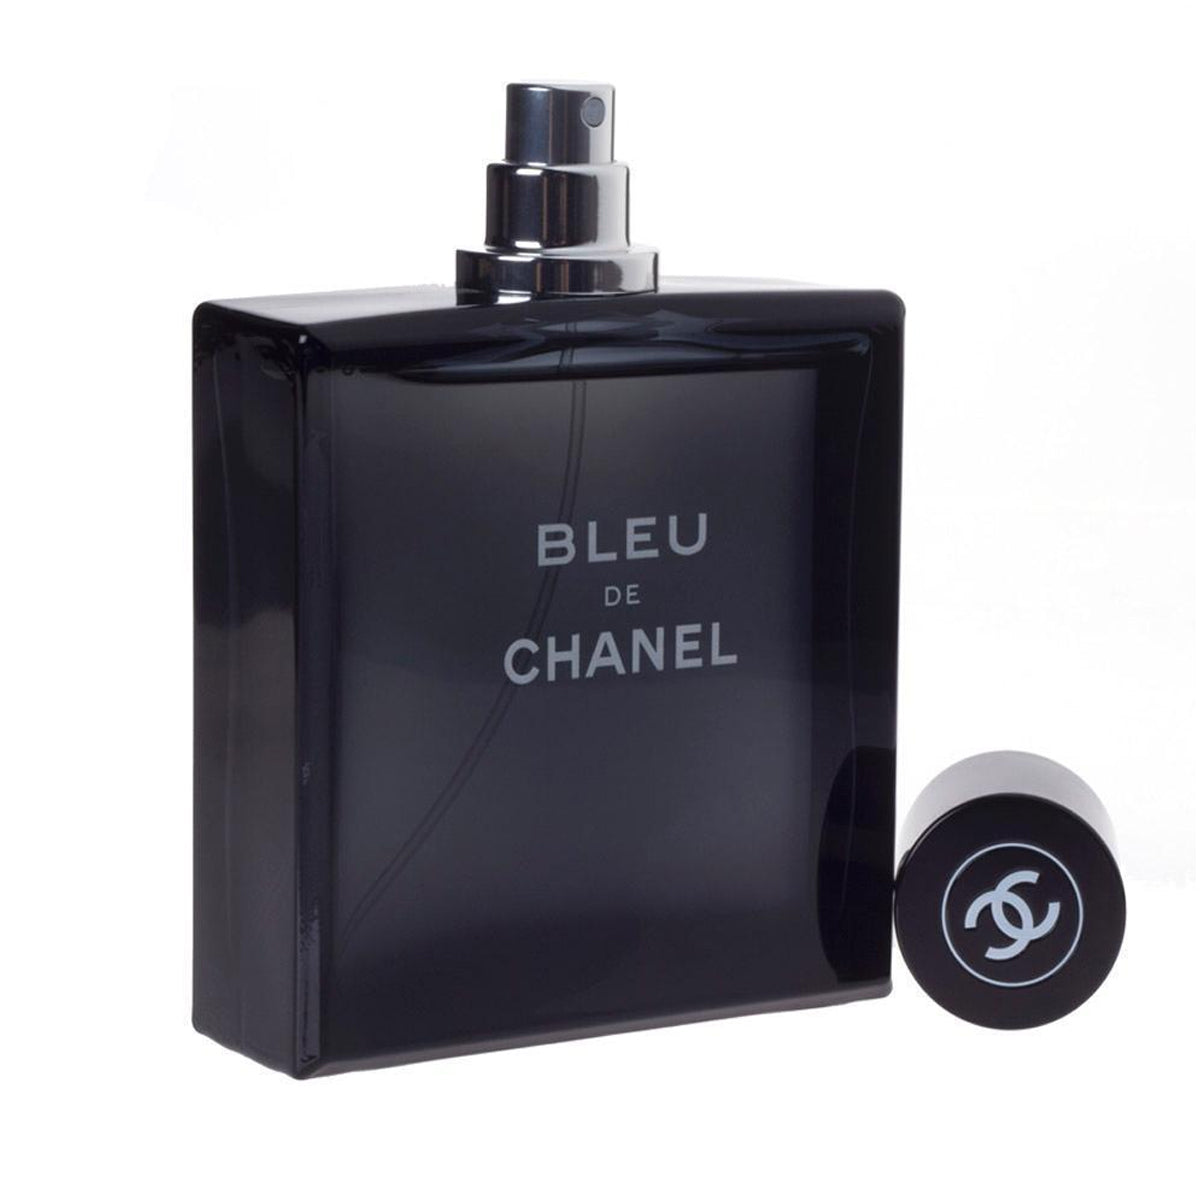 Get the best deals on Bleu de Chanel Eau de Toilette for Men when